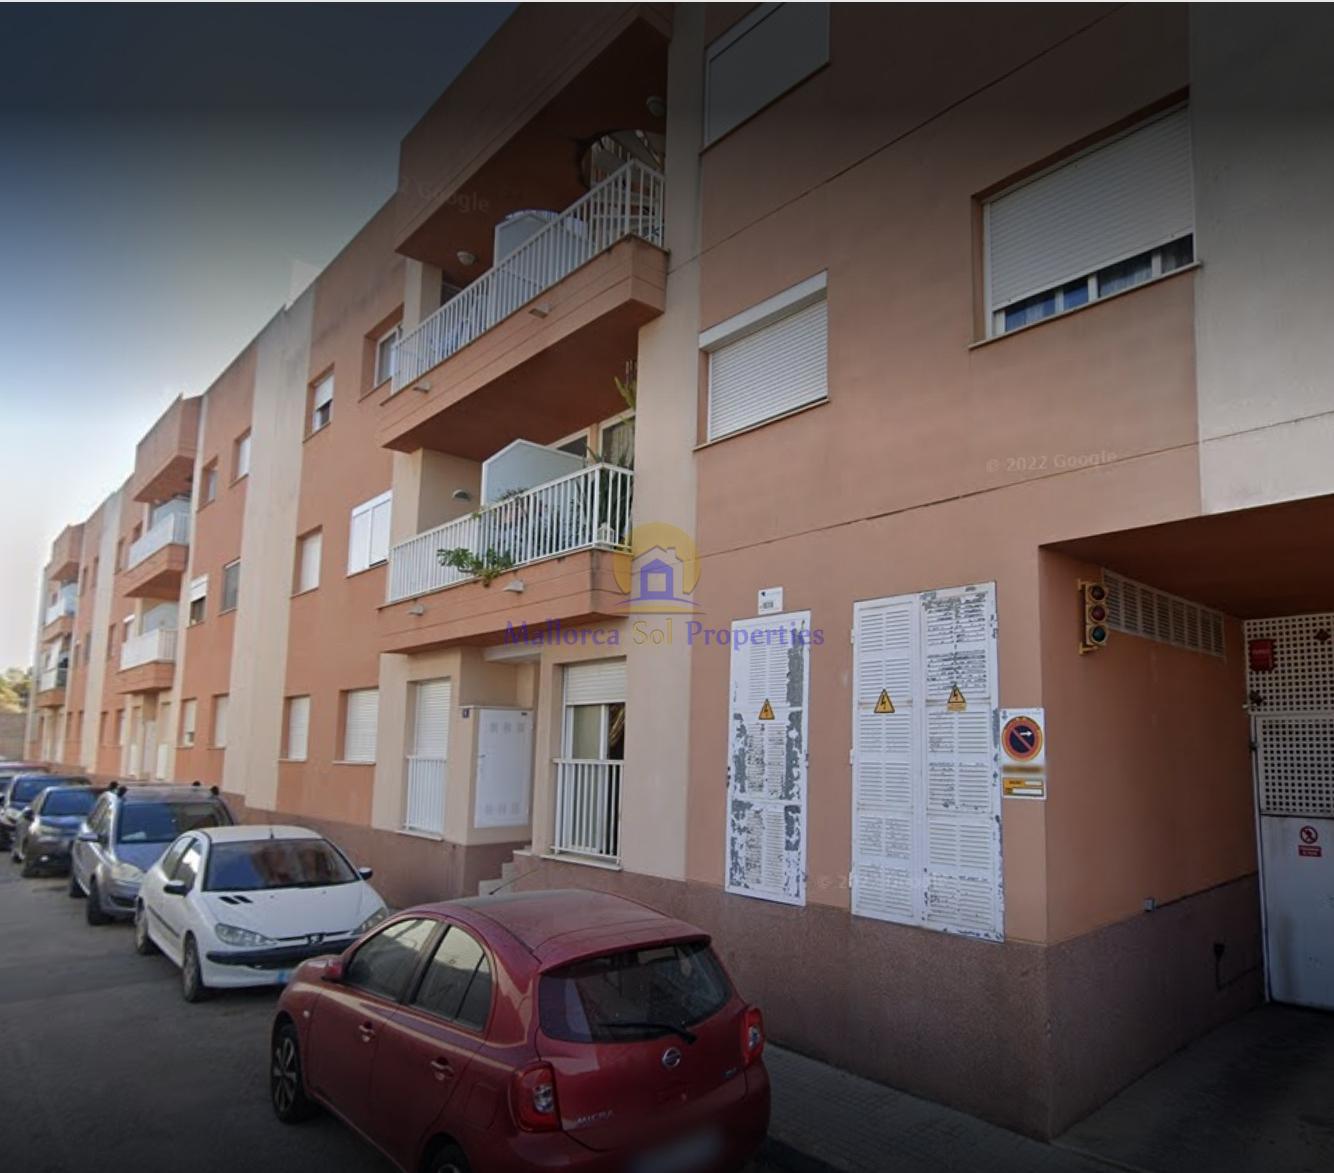 Apartamento en venta en COLL DEN RABASSA, Palma de Mallorca